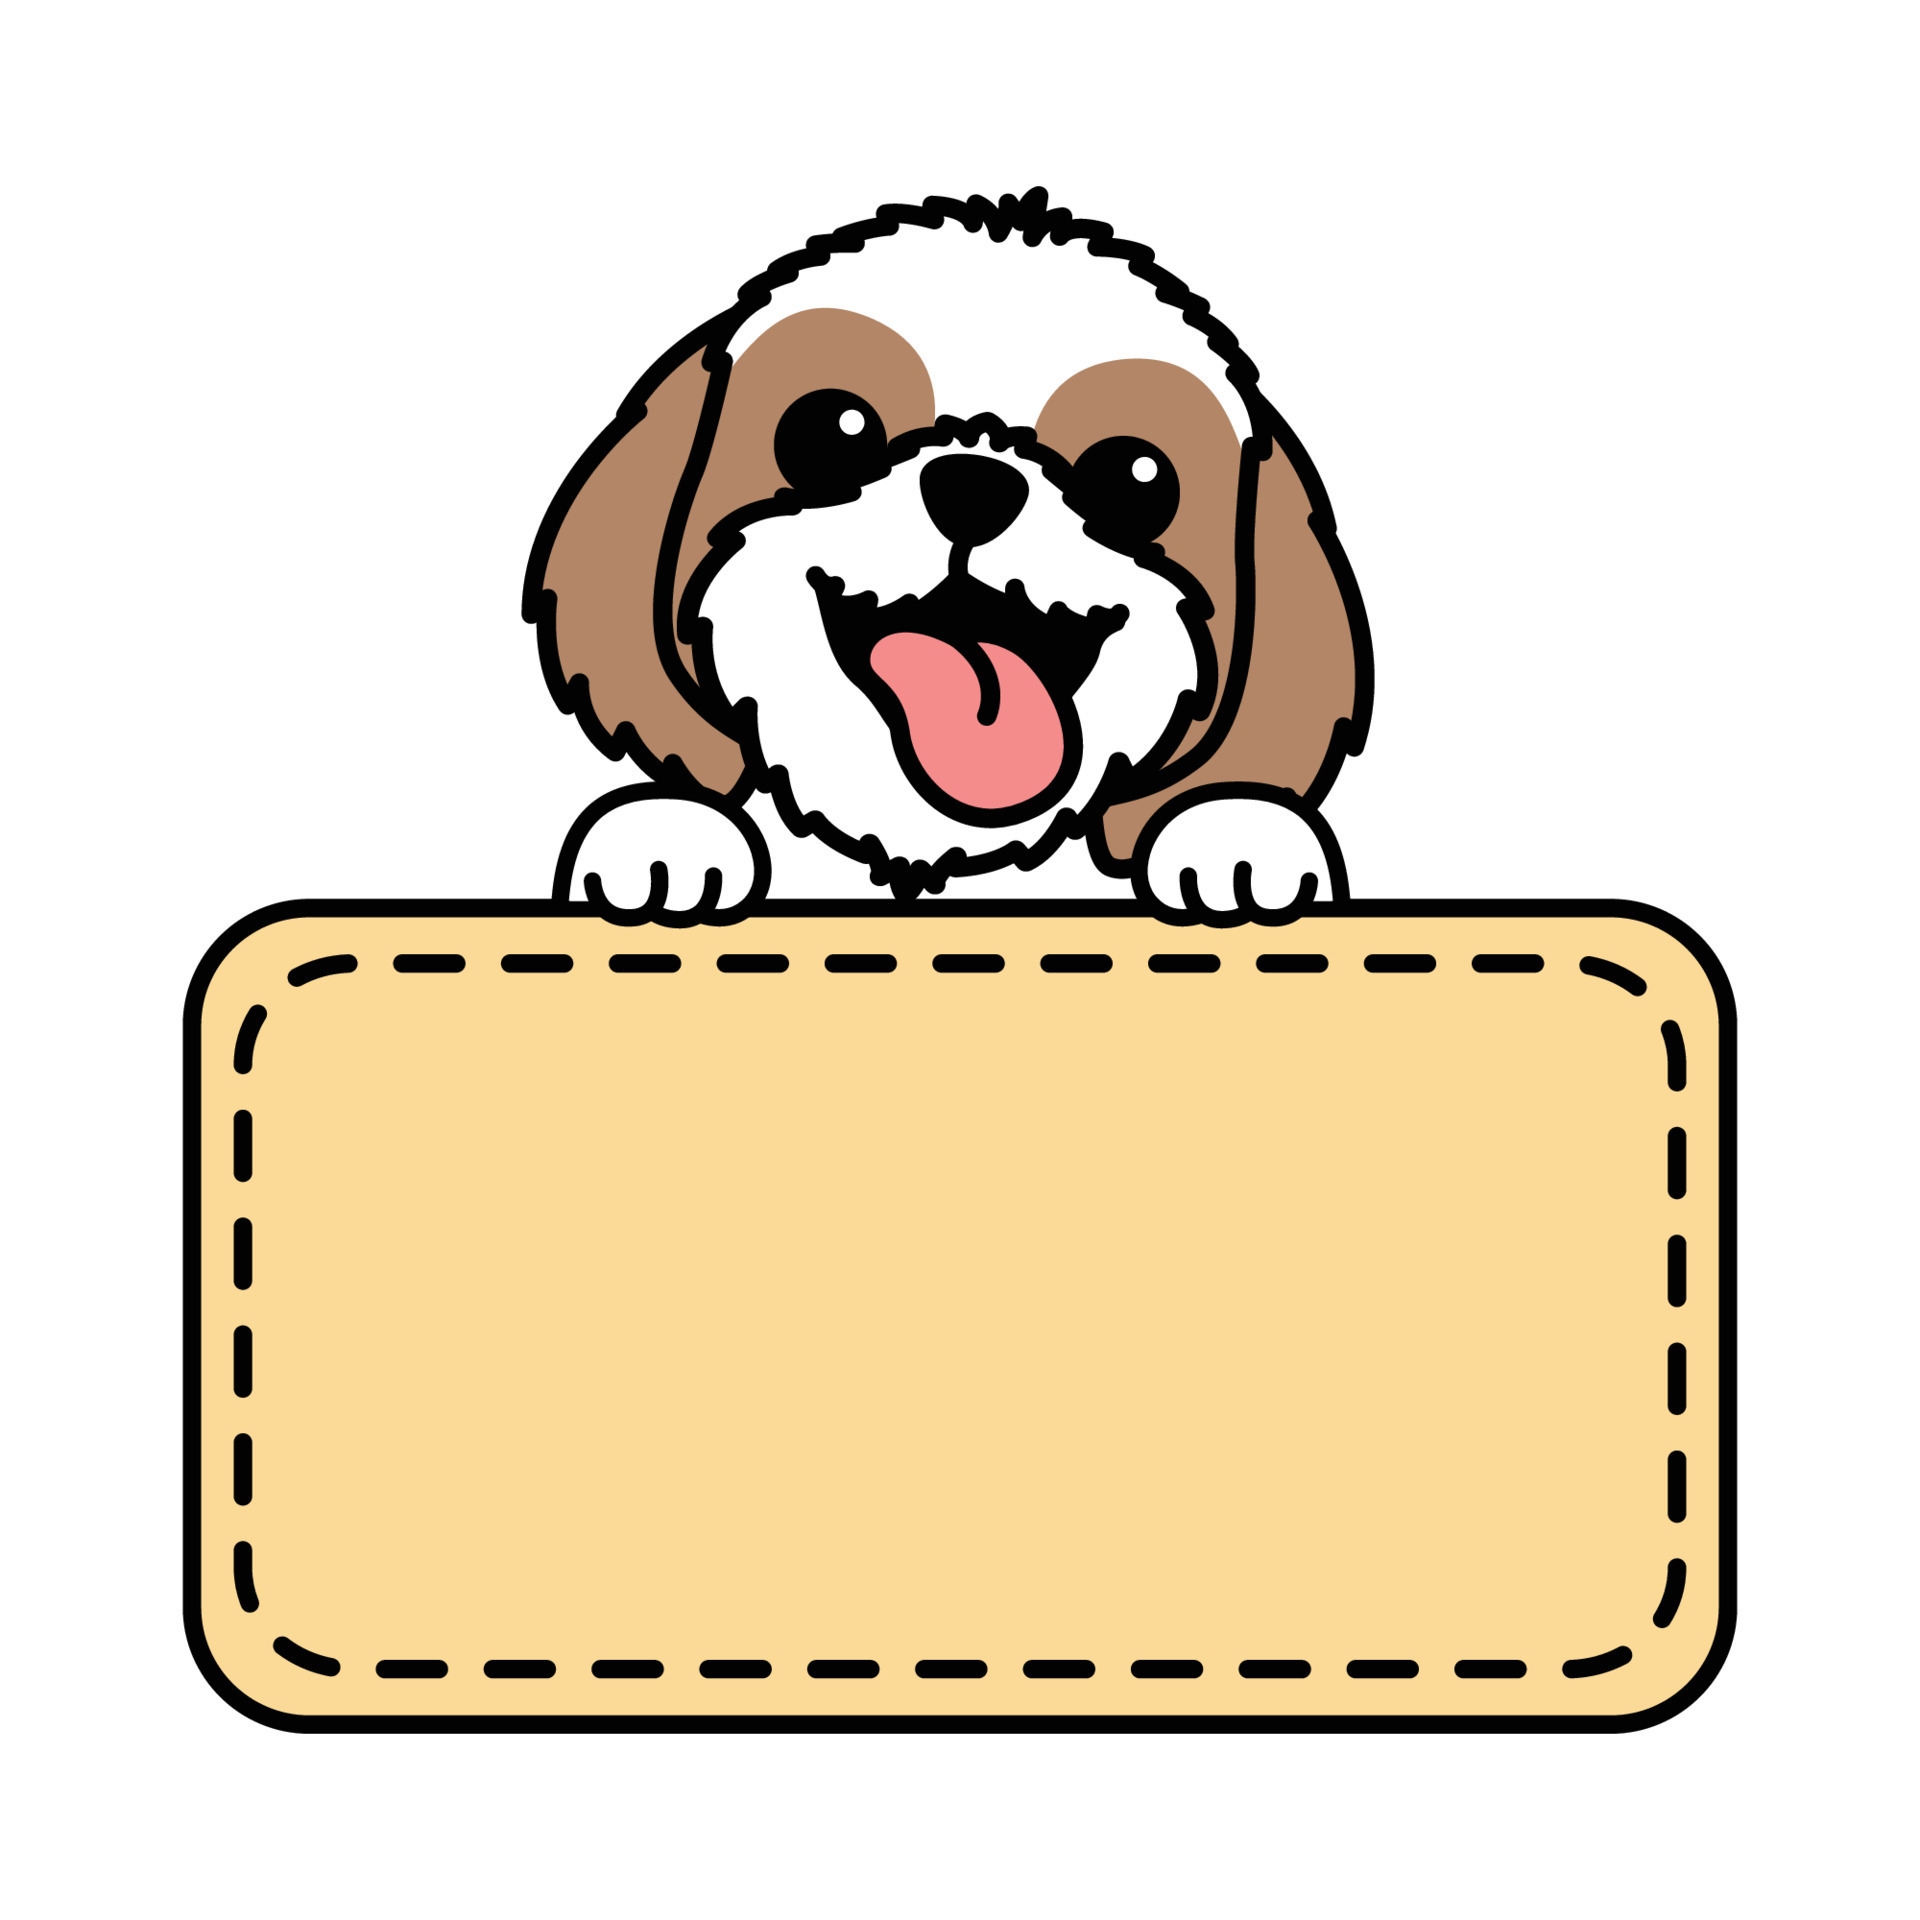 cachorro shih tzu engraçado com desenho de modelo de borda de moldura,  ilustração vetorial 19029396 Vetor no Vecteezy